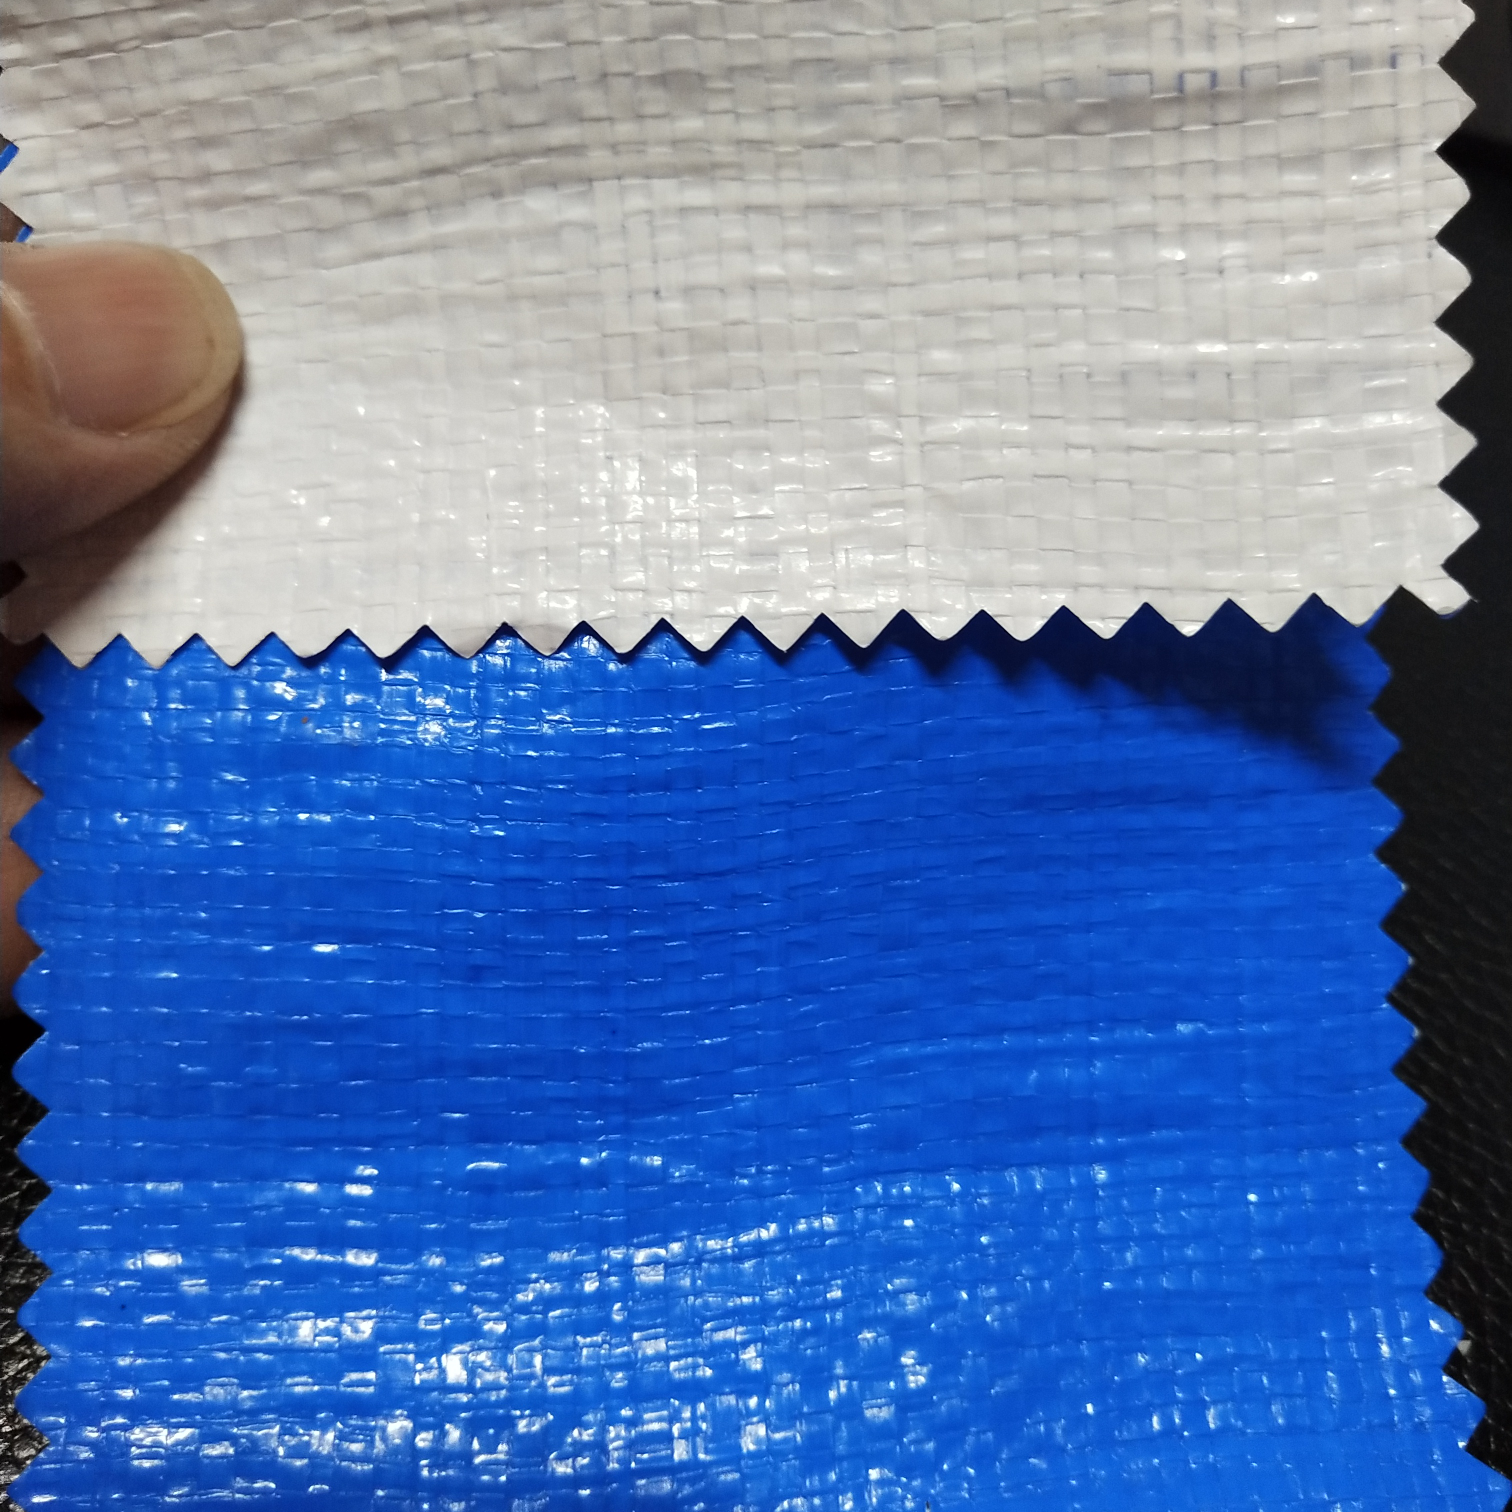 双面淋膜245克蓝白PE防水布  塑料编织布  适用于花房篷布 汽车篷布 帐篷底布 各种手提袋  收纳箱专用面料